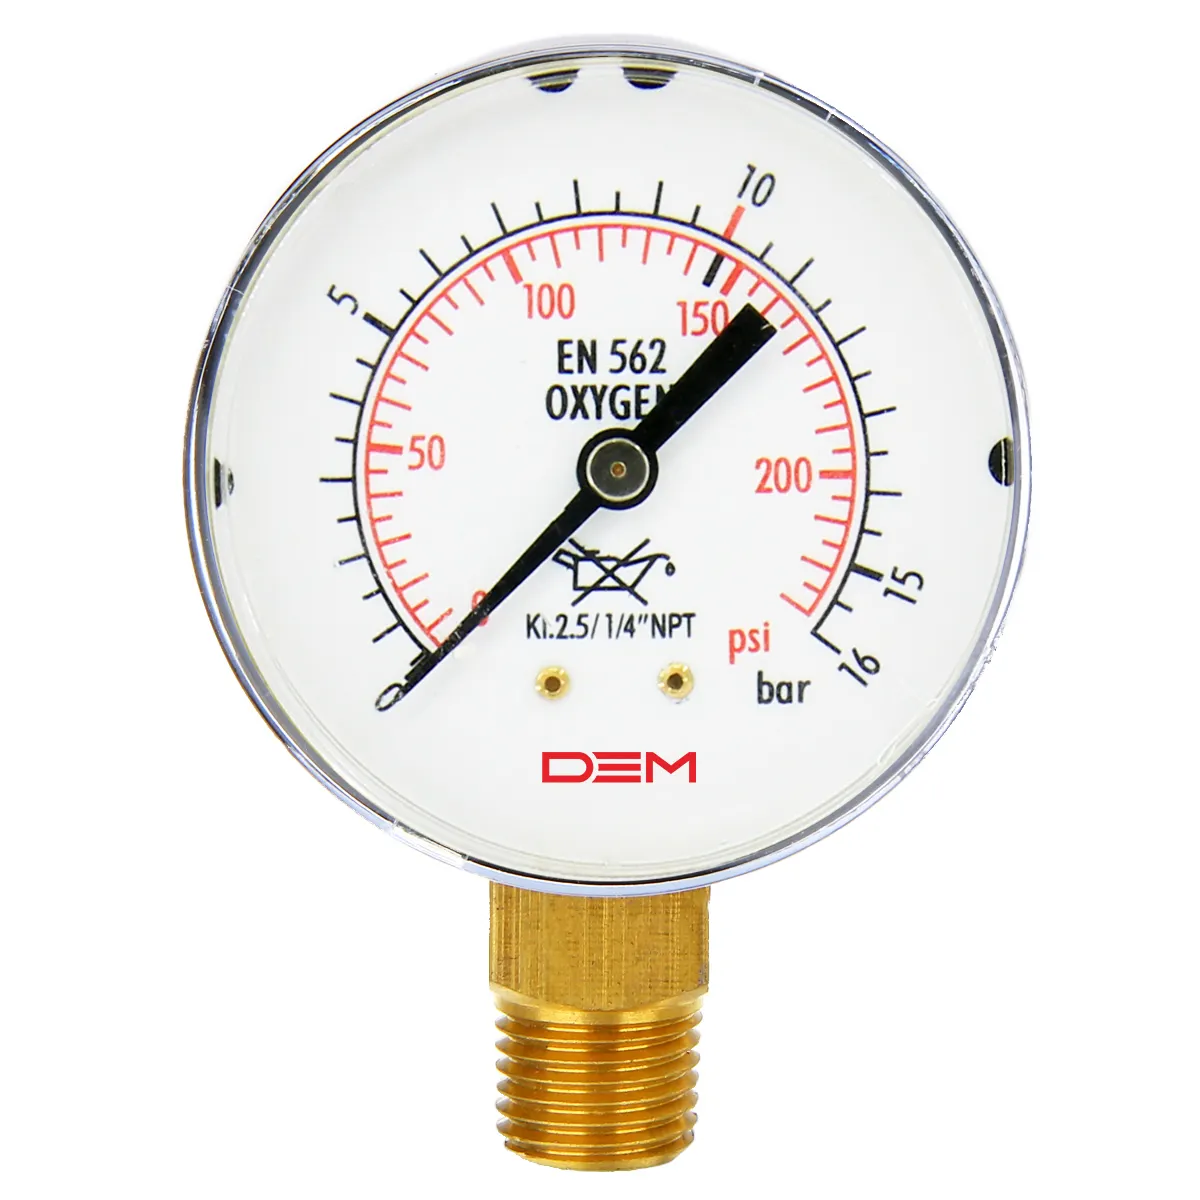 جهاز قياس ضغط الهواء, جهاز قياس ضغط الهواء ماركة (DEM 50) قطر 0-15 رطل/ساعة ، 0-10 بار ، 300bar ، مقياس ضغط الهواء ، من الصلب المقاوم للصدأ ، 1/4 NPT